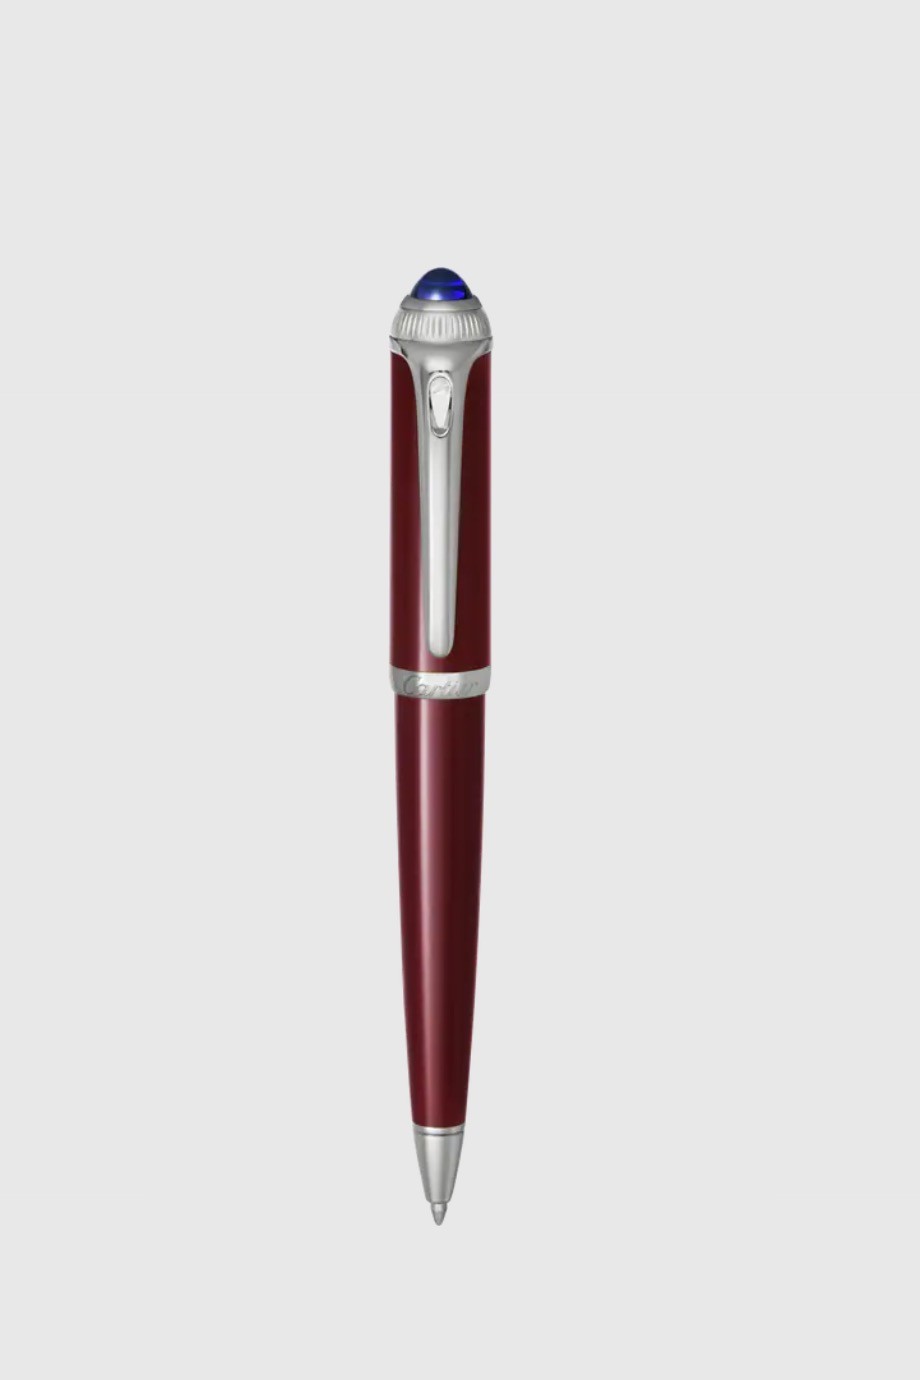 كارتير - قلم حبر من مجموعة "آر دو كارتييه"